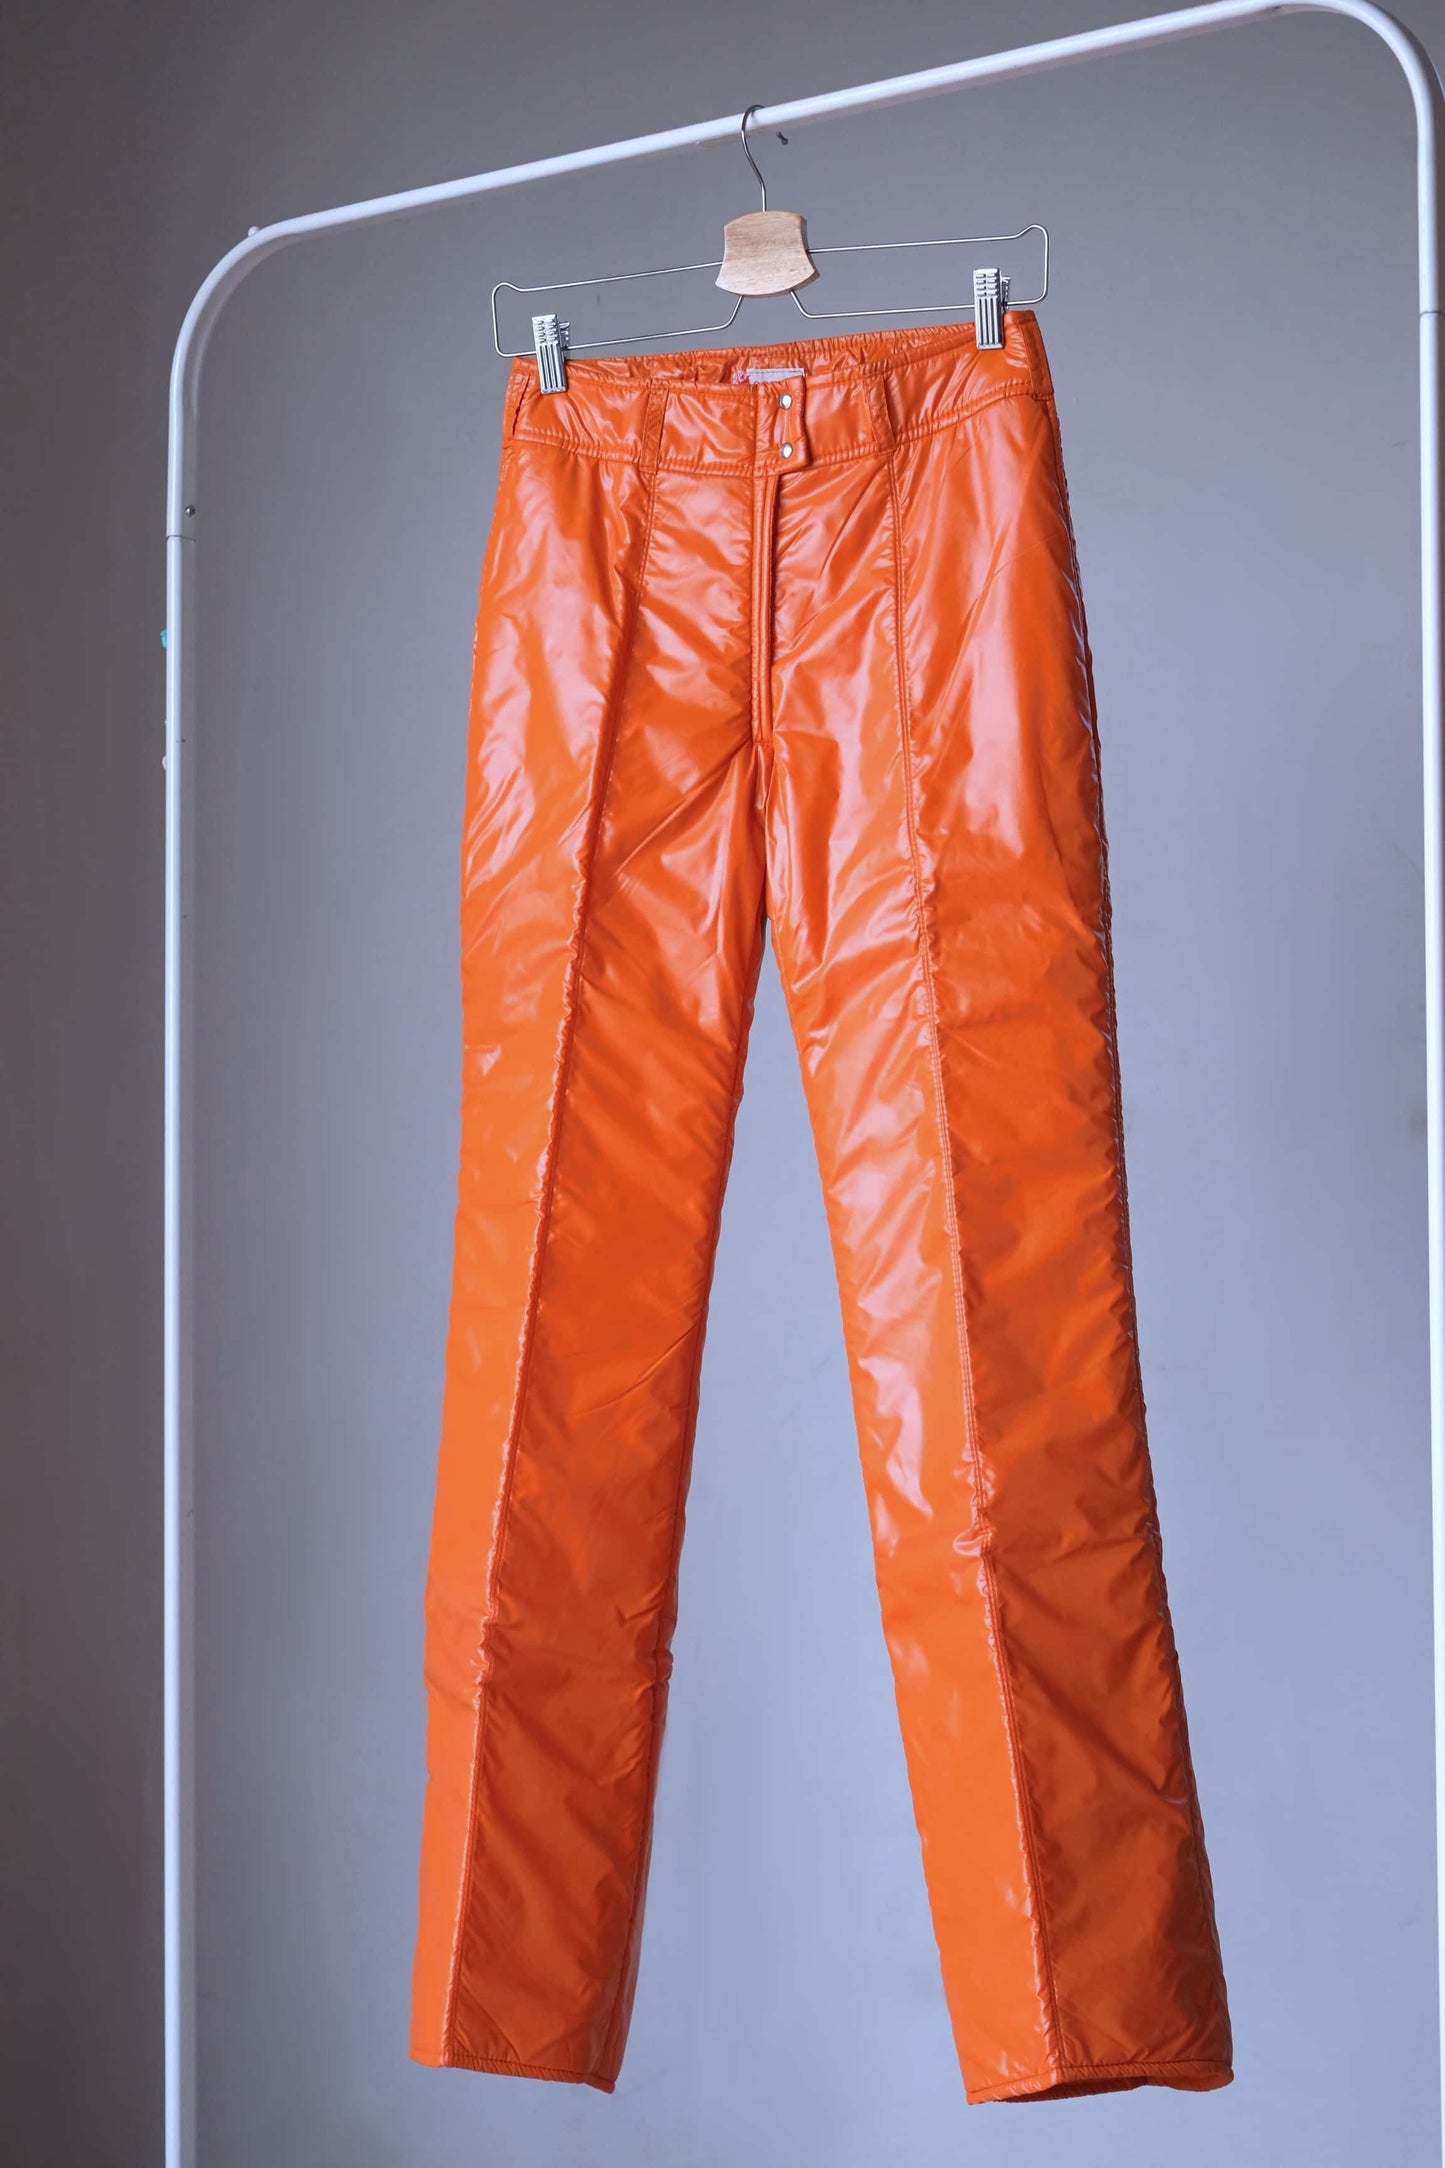 MOSSANT Galaxie Vintage 70's Ski Suit